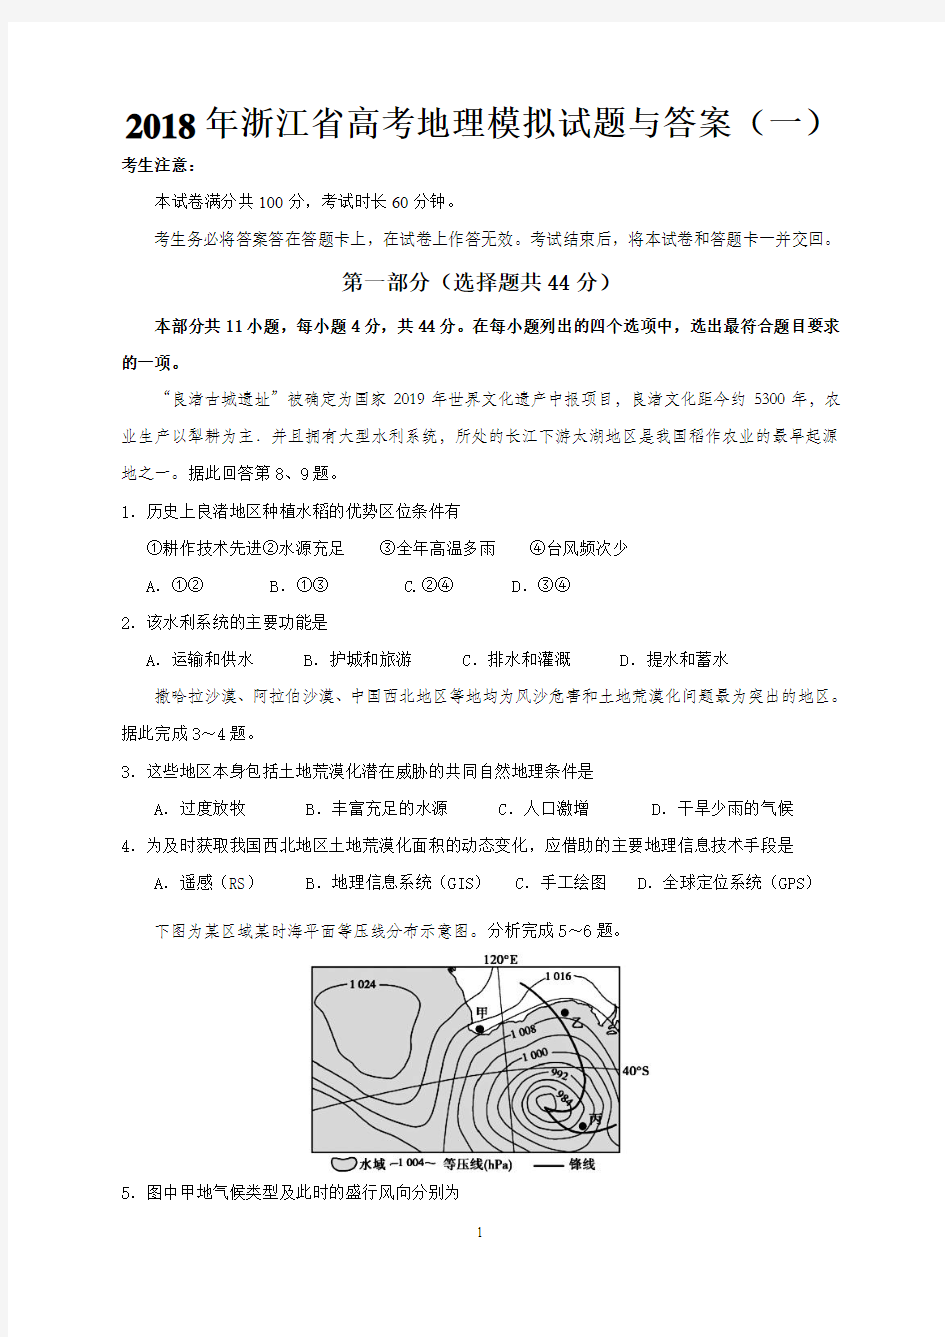 2018年浙江省高考地理模拟试题与答案(一)